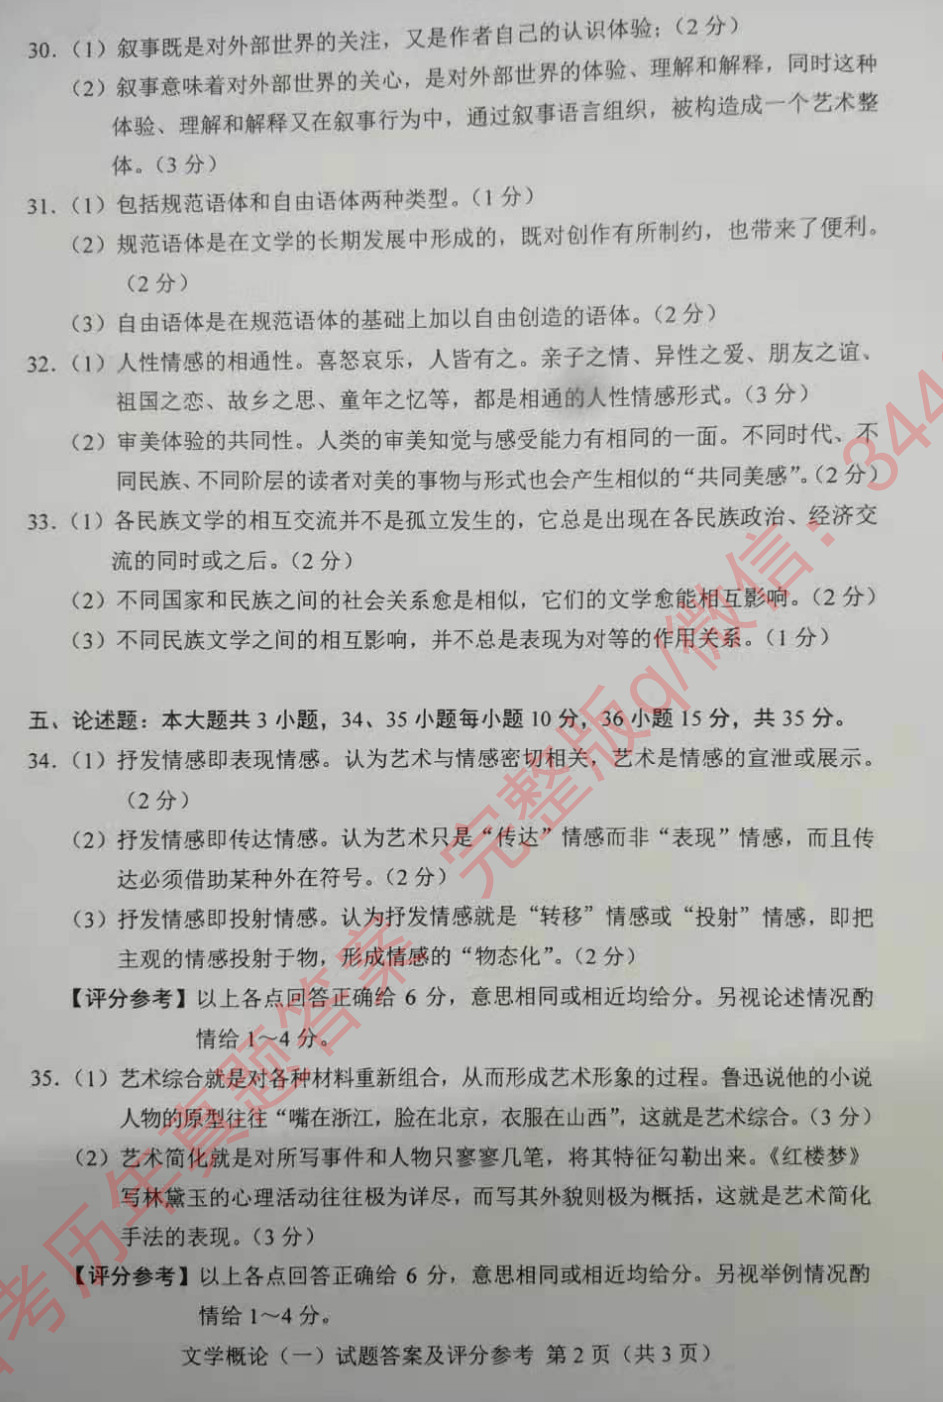 2019年10月贵州省自学考试00529文学概论（一）真题及答案